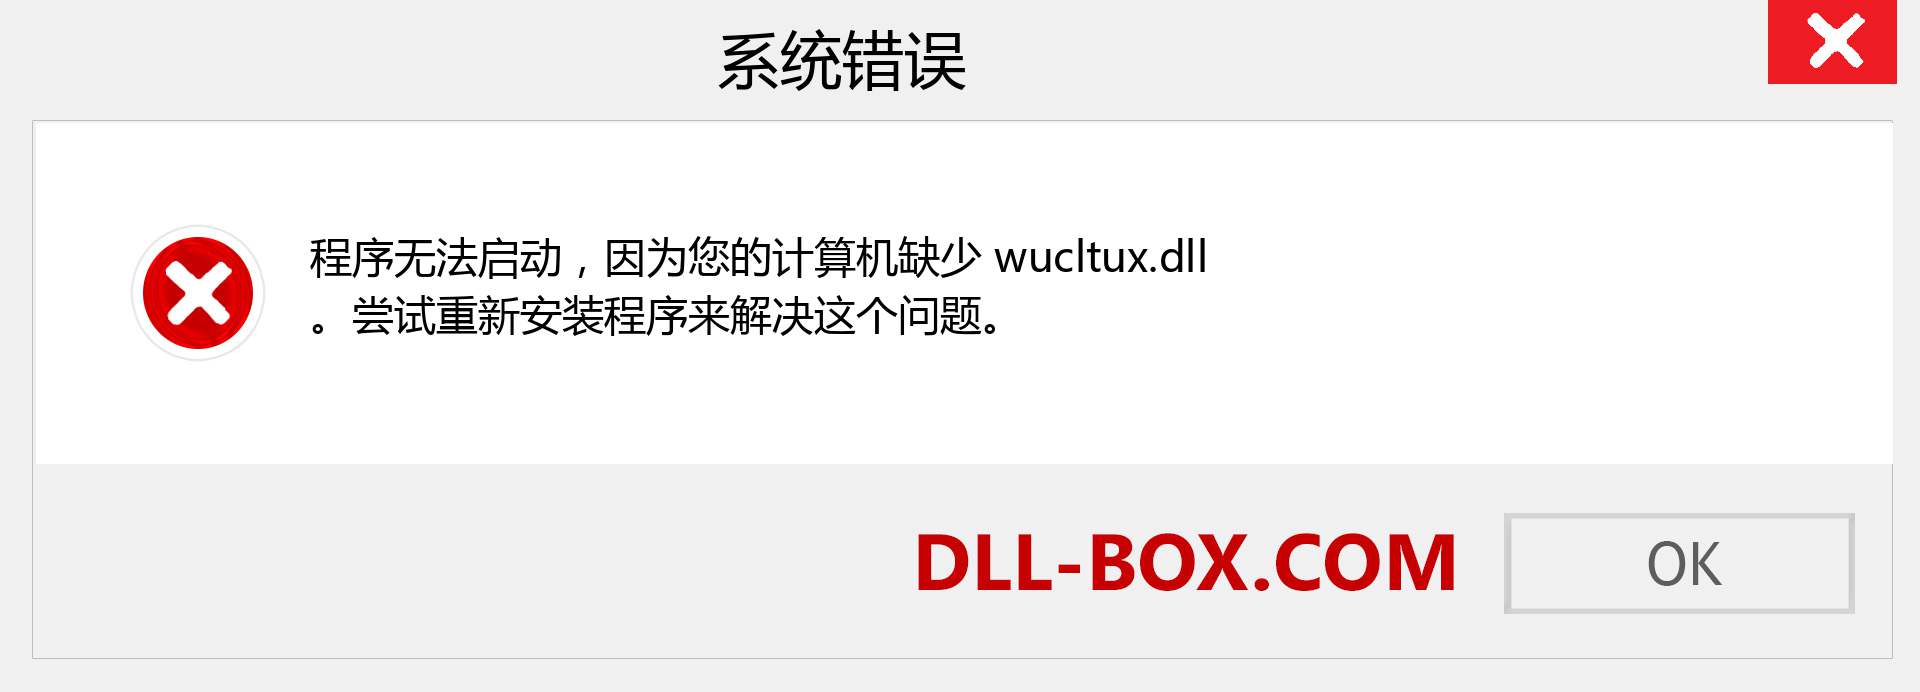 wucltux.dll 文件丢失？。 适用于 Windows 7、8、10 的下载 - 修复 Windows、照片、图像上的 wucltux dll 丢失错误